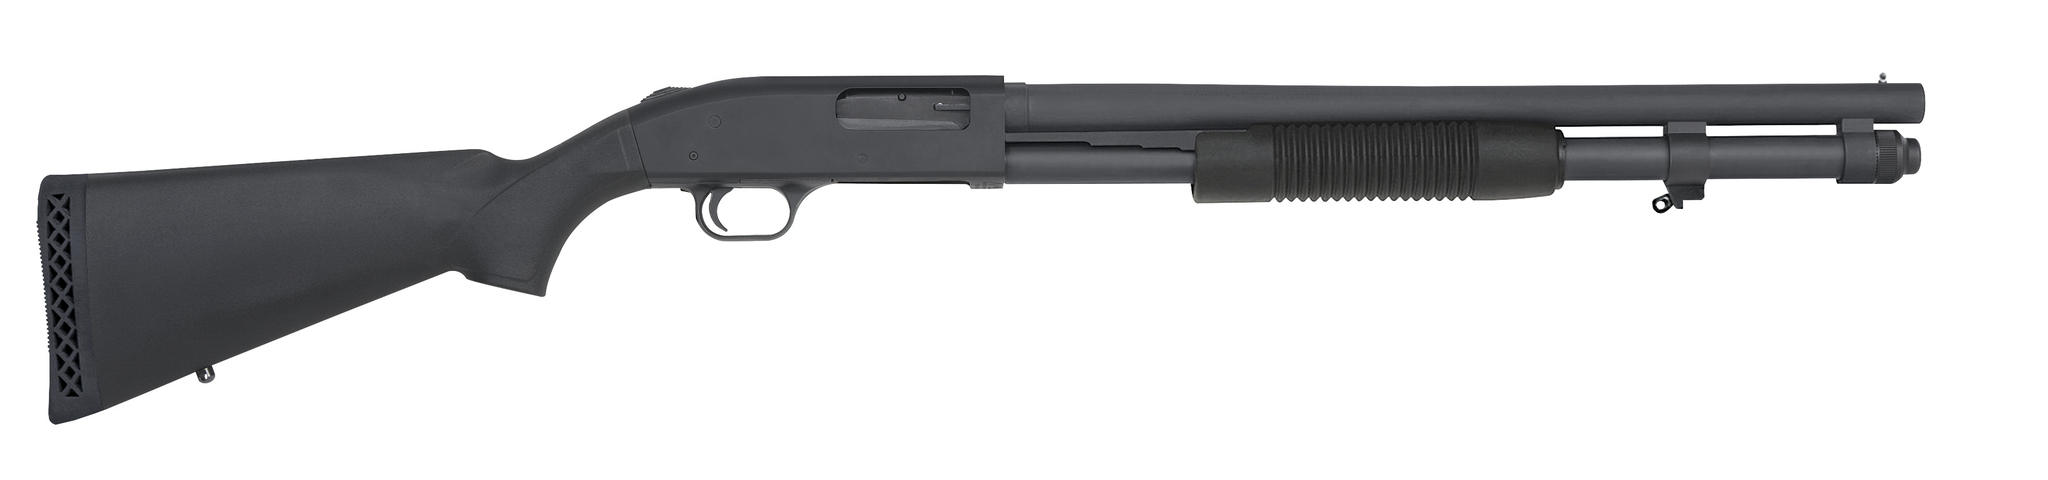 Mossberg 51660 590A1 12 Gauge 20" Parkerized Shotgun-img-0